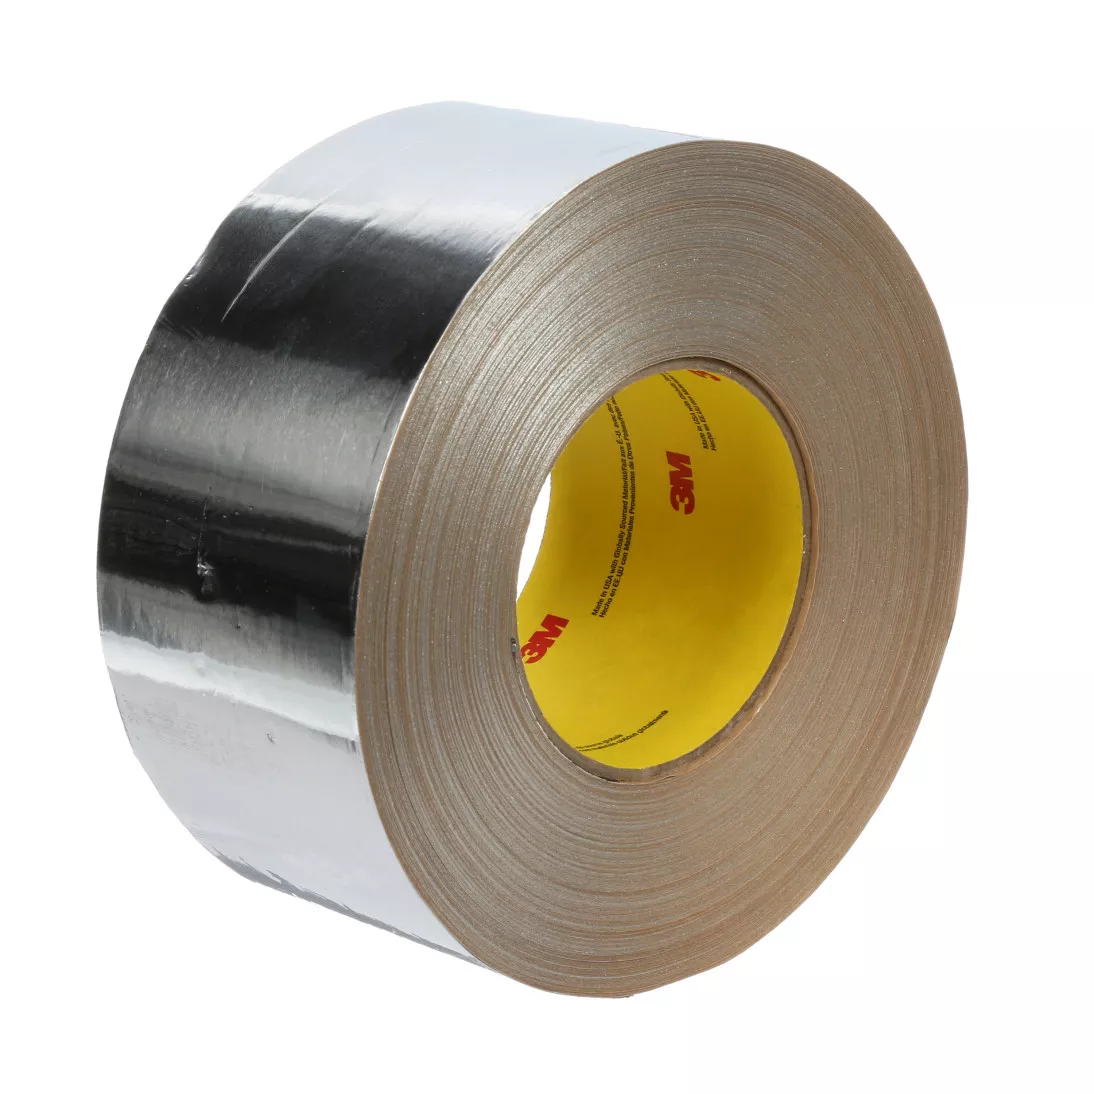 3M™ Venture Tape™ Aluminum Foil Tape 1520CW, Silver, 63.5 mm x 45.7 m,
3.2 mil, 20 rolls per case